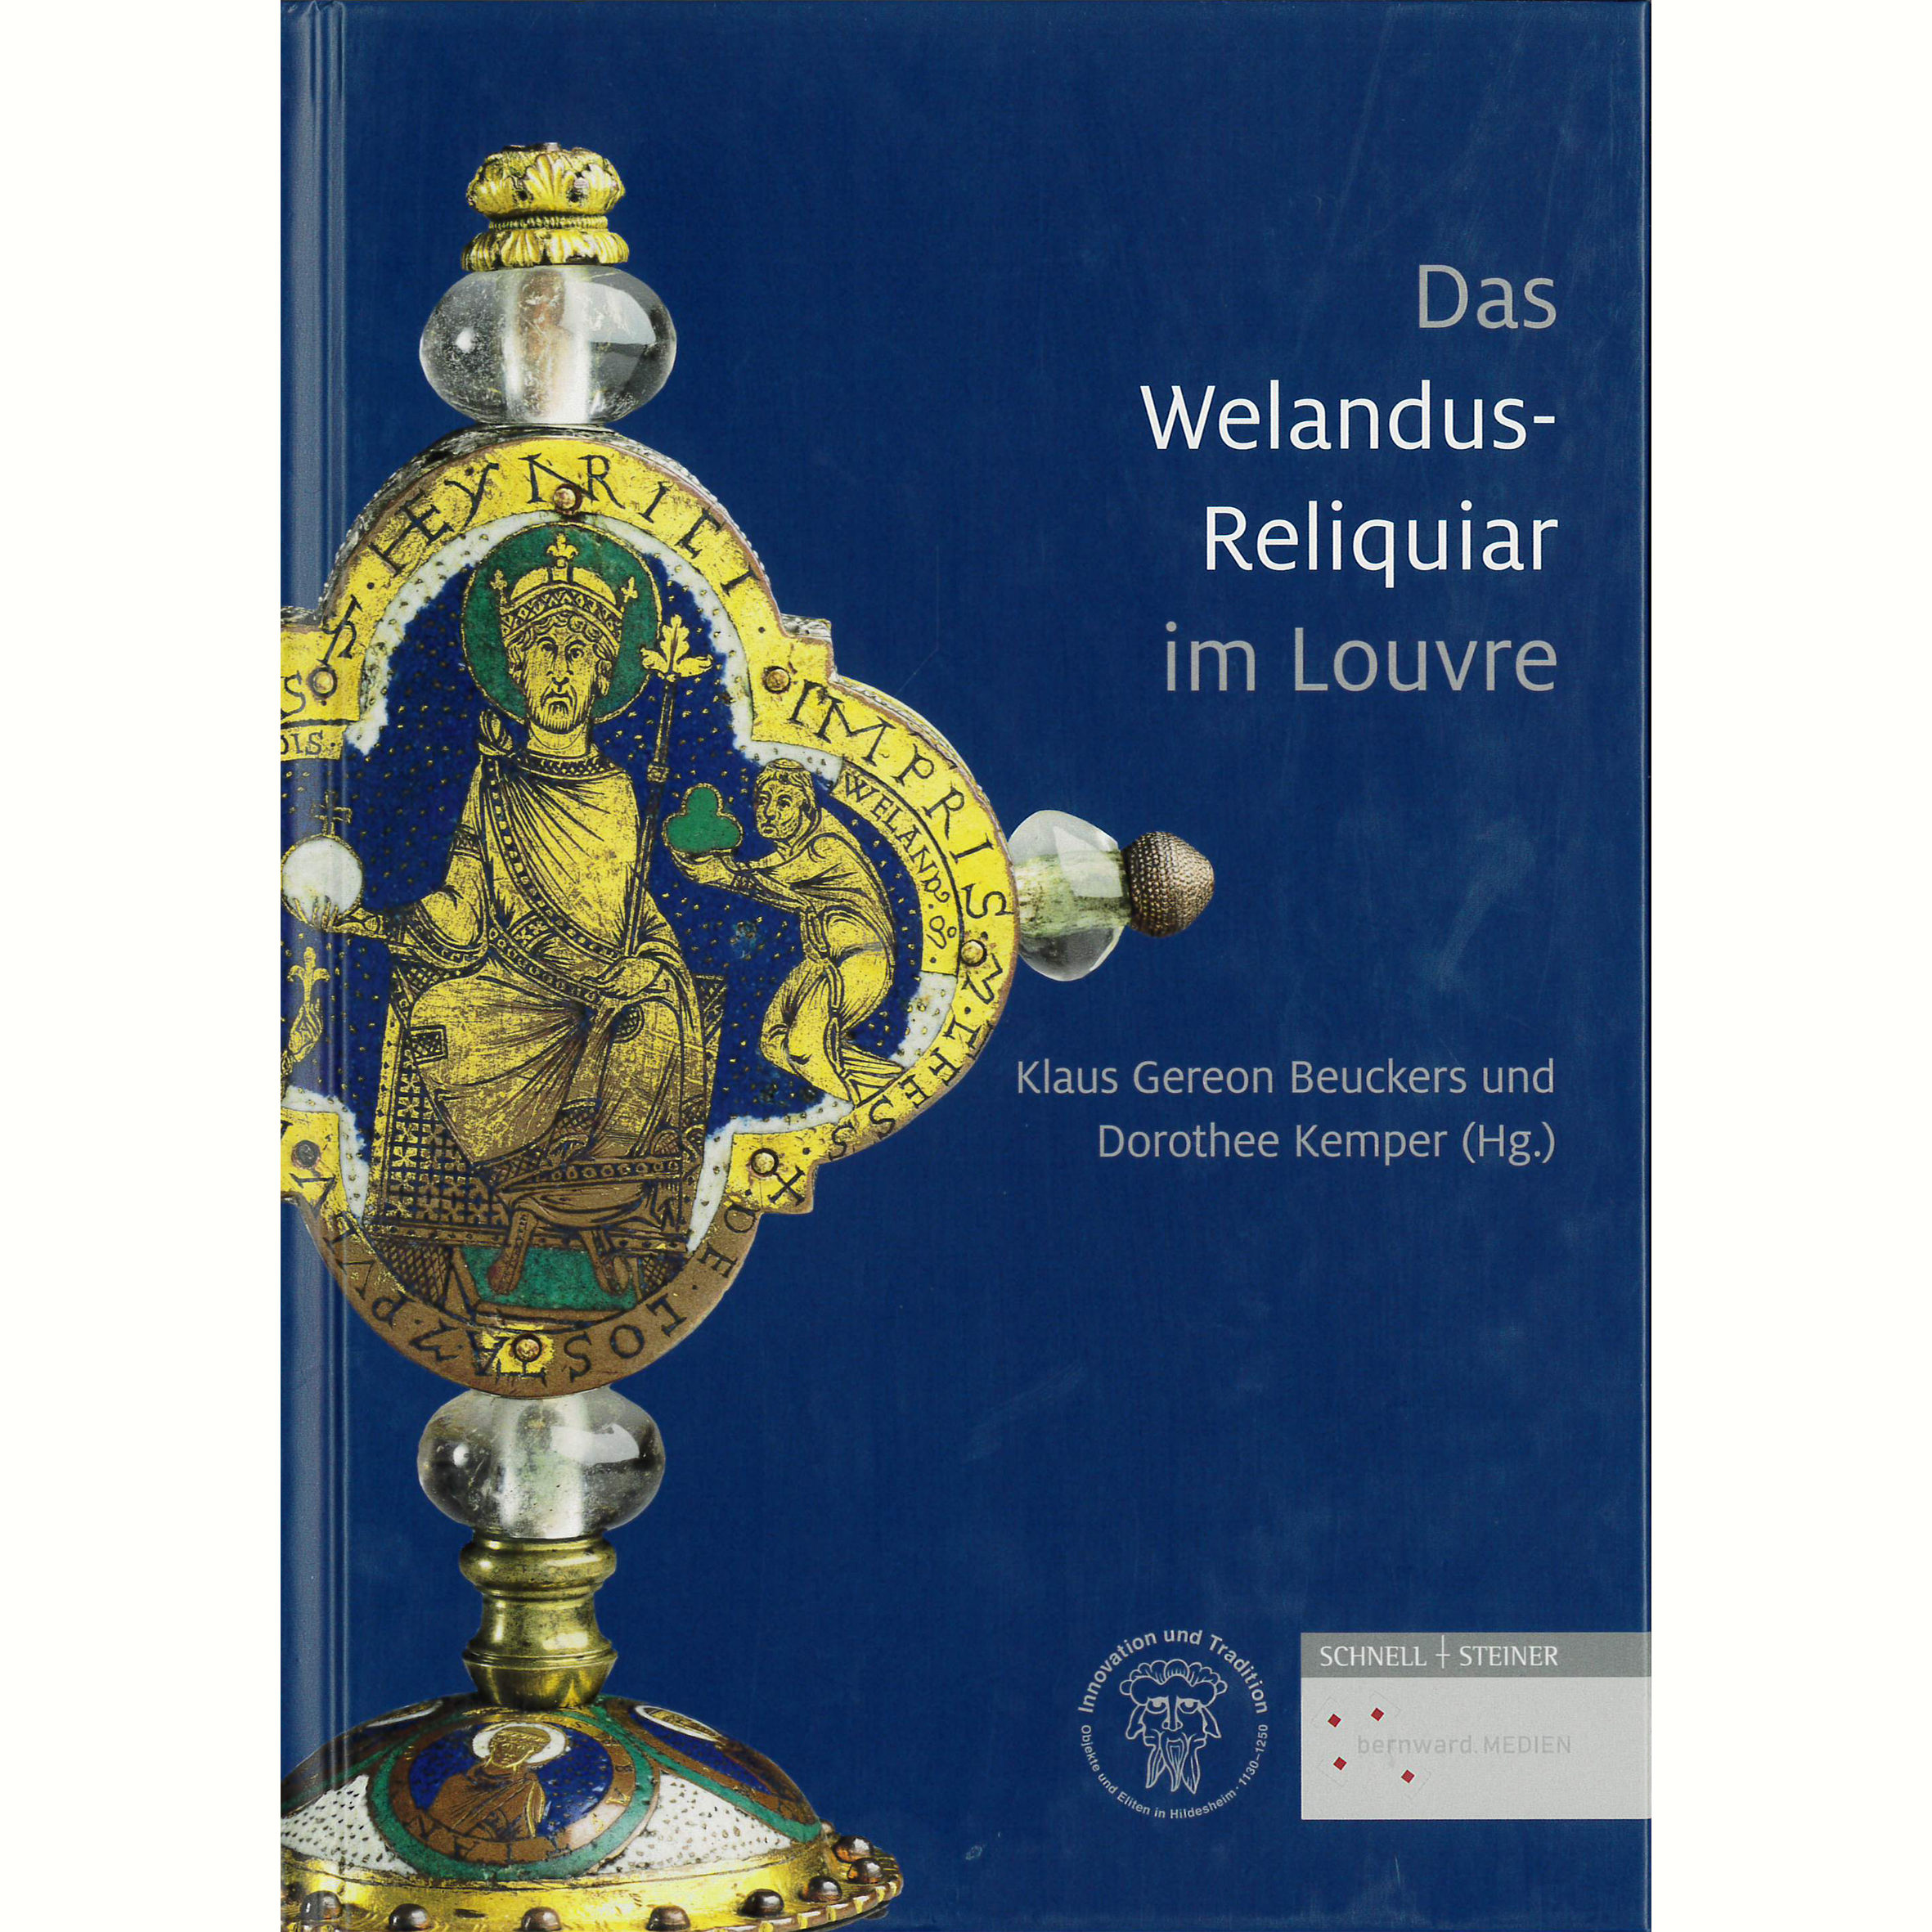 Das Welandus-Reliquiar